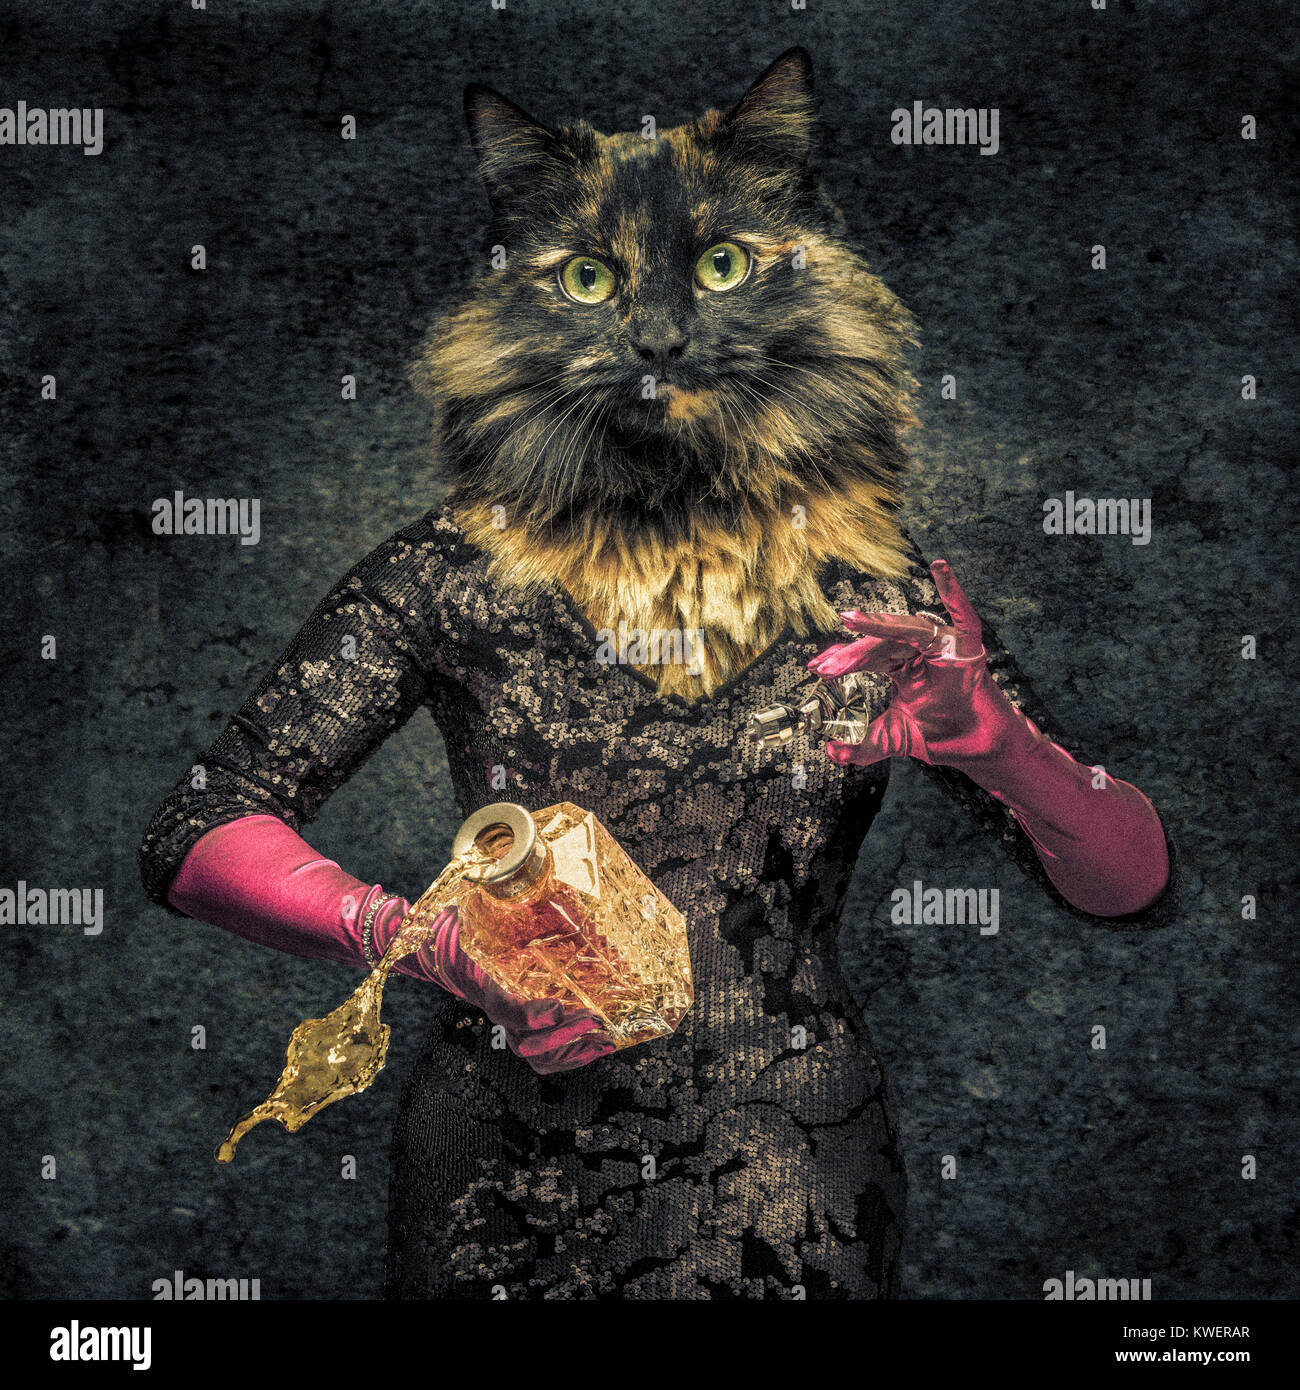 Il corpo umano con testa di gatto creatura ibrida holding decanter con bevanda fuoriuscita. Foto Stock